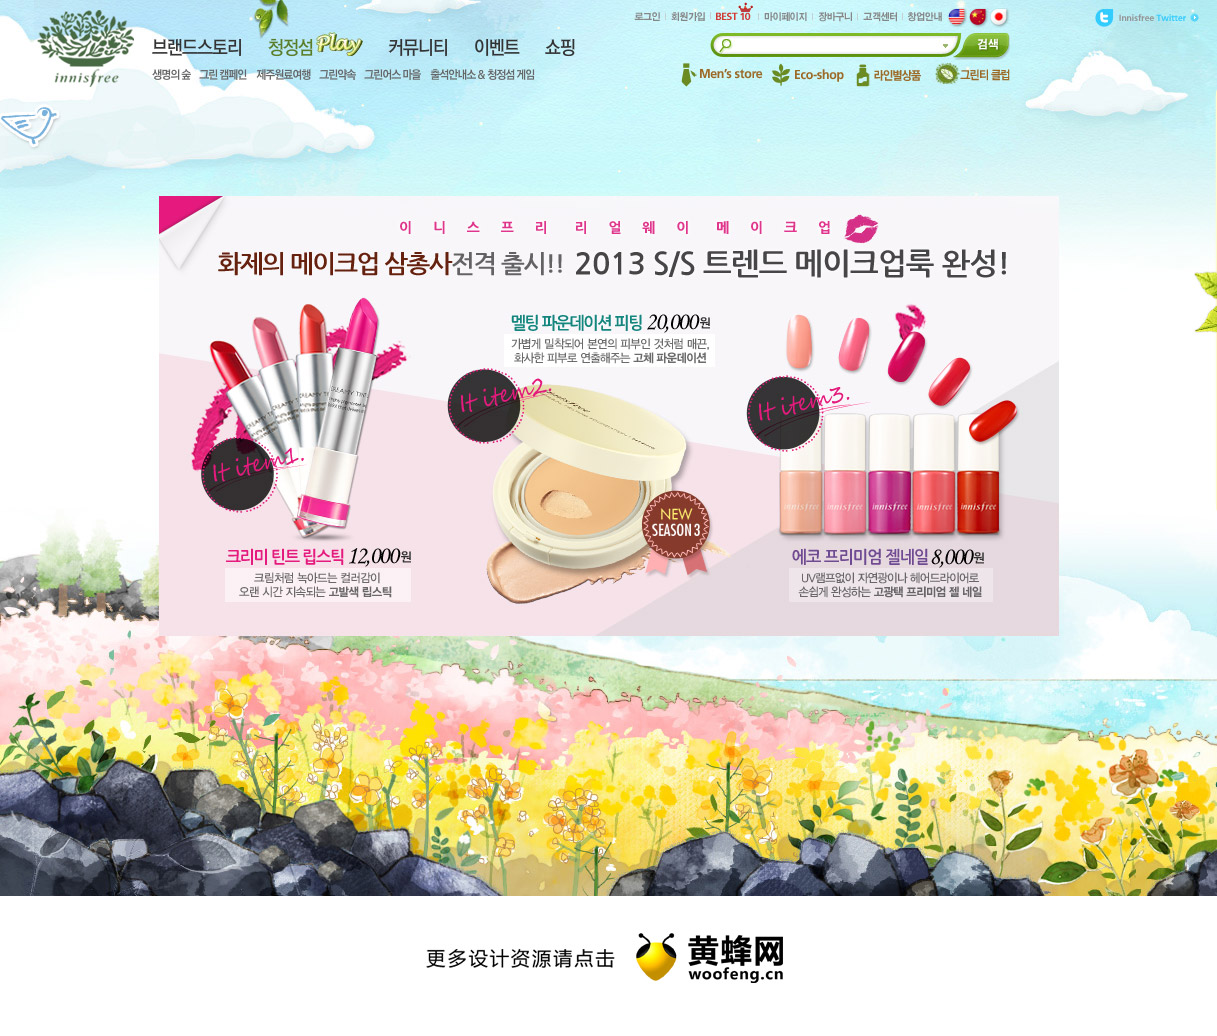 悦诗风吟韩国化妆品网站，来源自黄蜂网https://woofeng.cn/web/